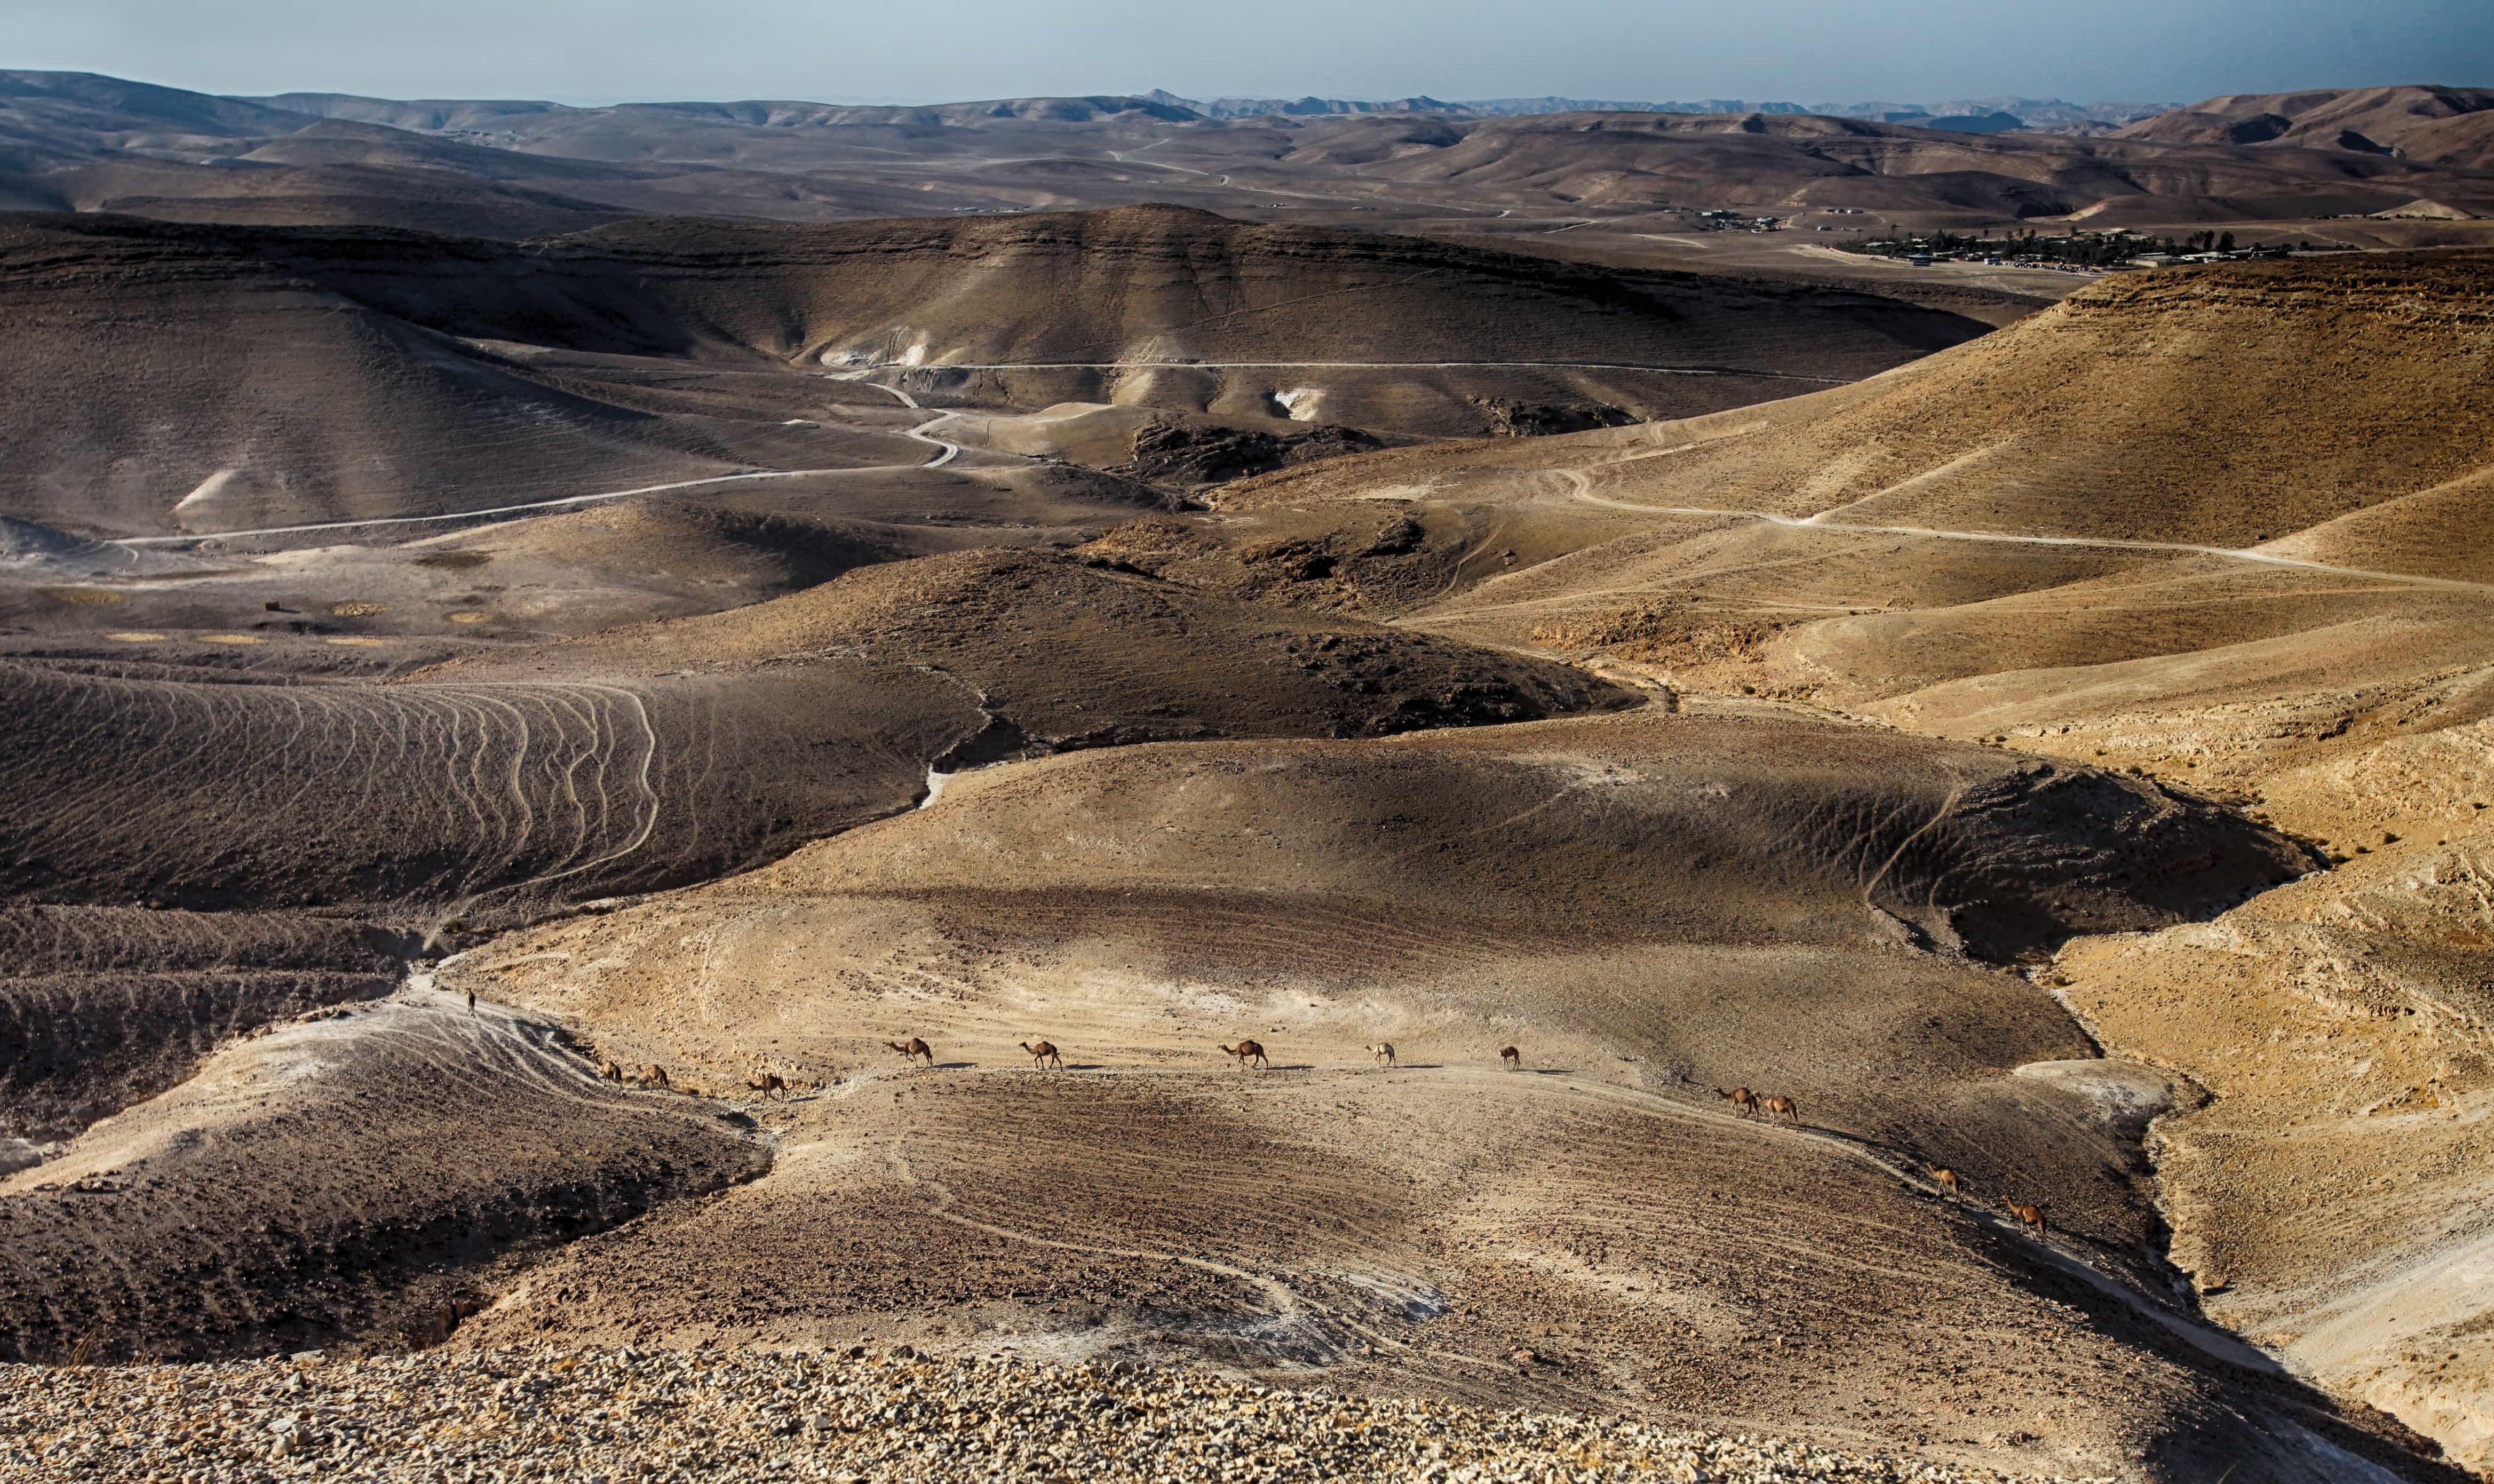 Uma paisagem surreal de deserto onde a areia movediça cai 00489 02